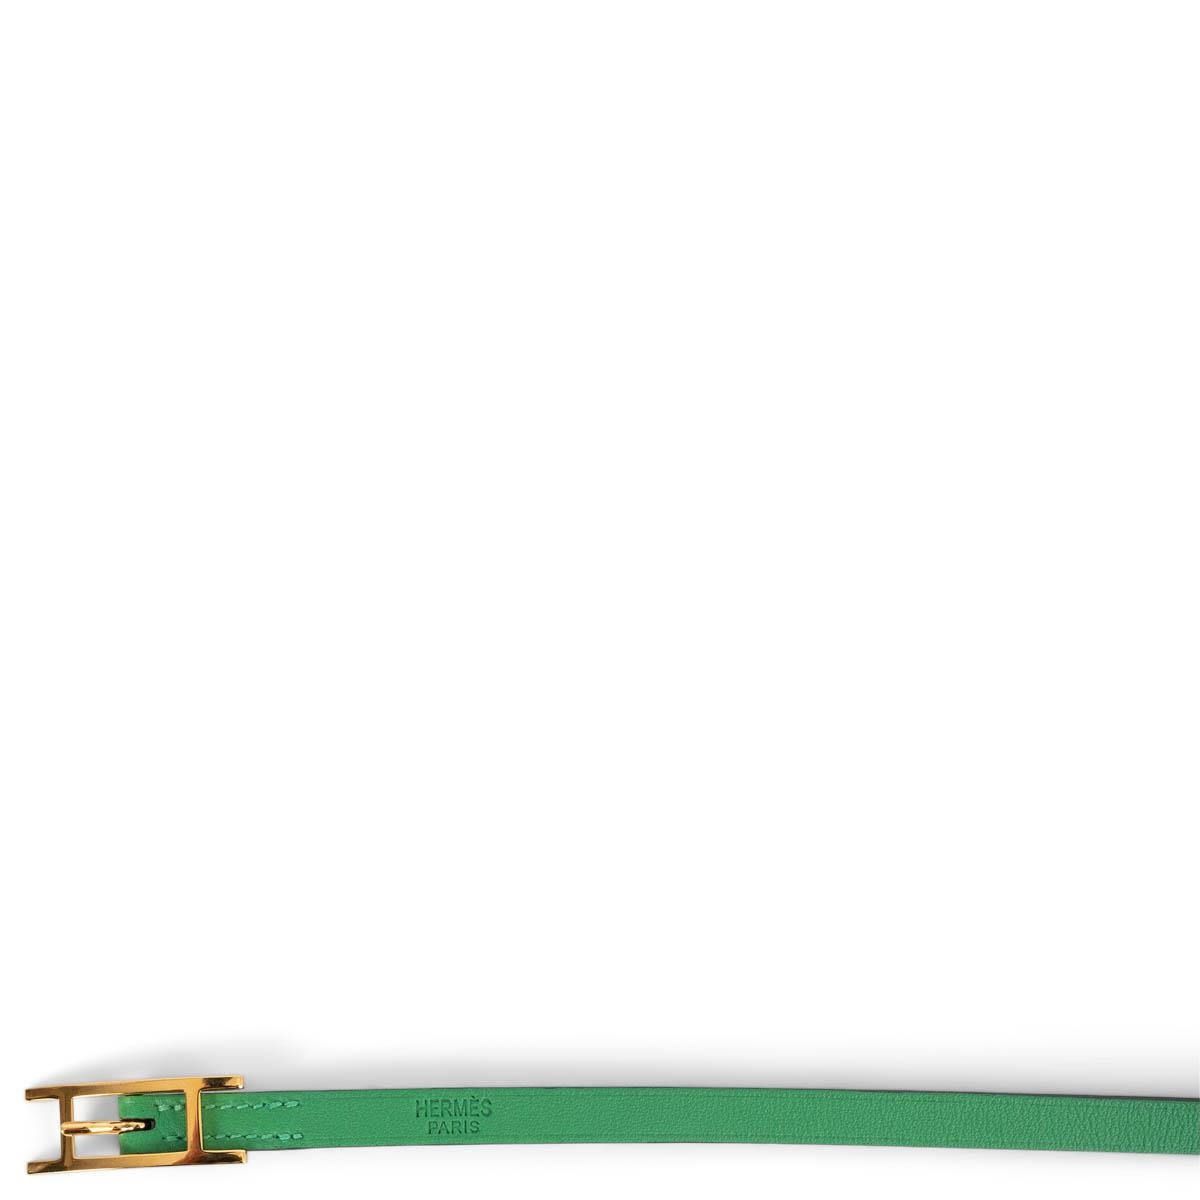 Bracelet Hermès 3 Wrap 100% authentique en cuir Vertigo Swift avec boucle en métal doré. A été porté et est en excellent état. Livré avec sac à poussière et boîte. 

Mesures
Largeur	0.9cm (0.4in)
Longueur	84cm (32.8in)
Matériel informatique	Ton